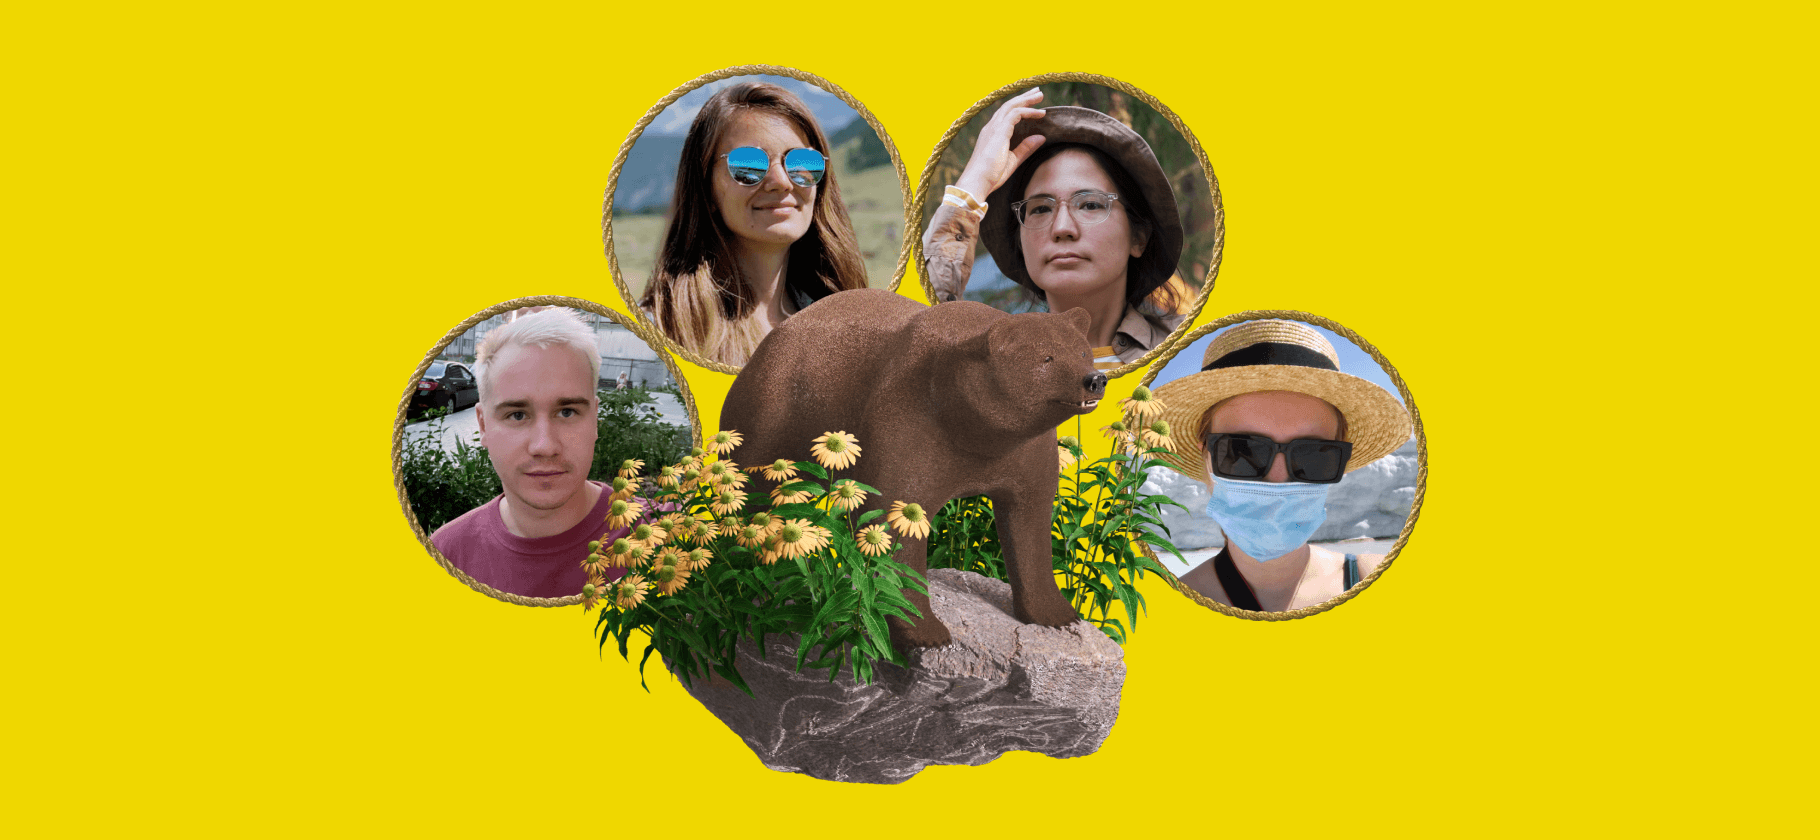 «А ночью к нам забрел медведь»: как мы провели отпуск в условиях пандемии